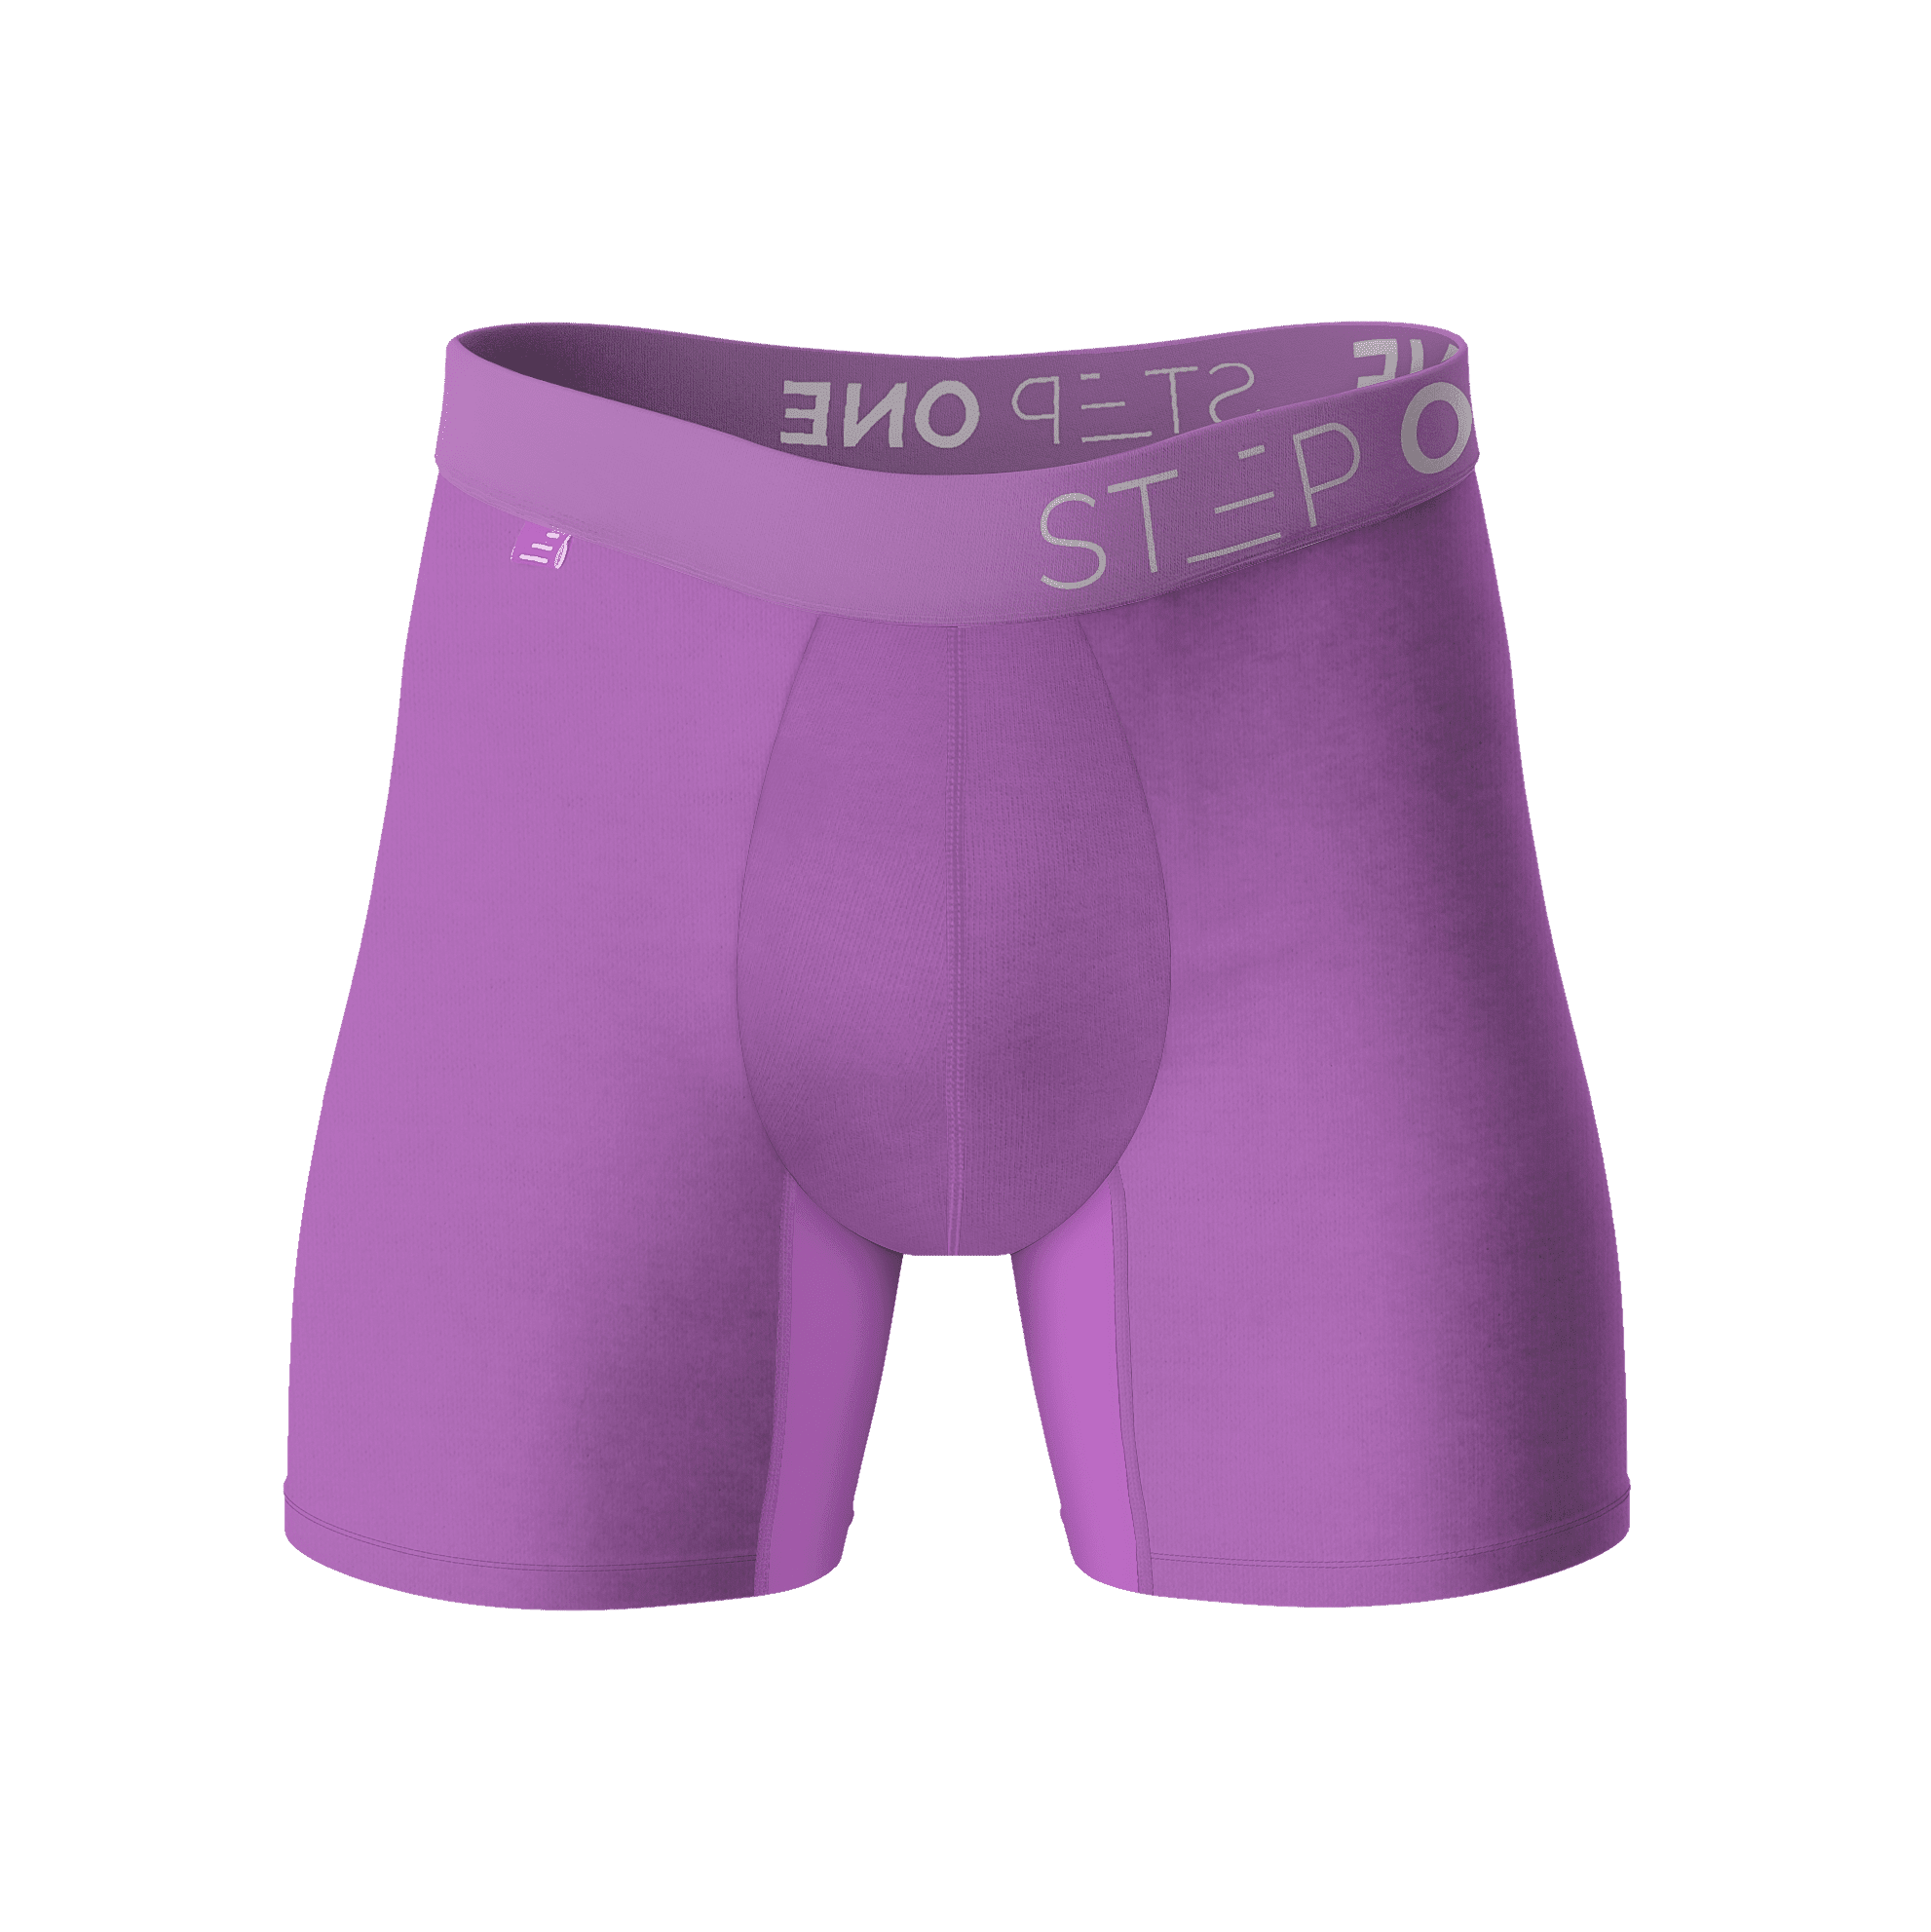 Boxer Brief - Willy Bonkas  Step One Men's Underwear UK